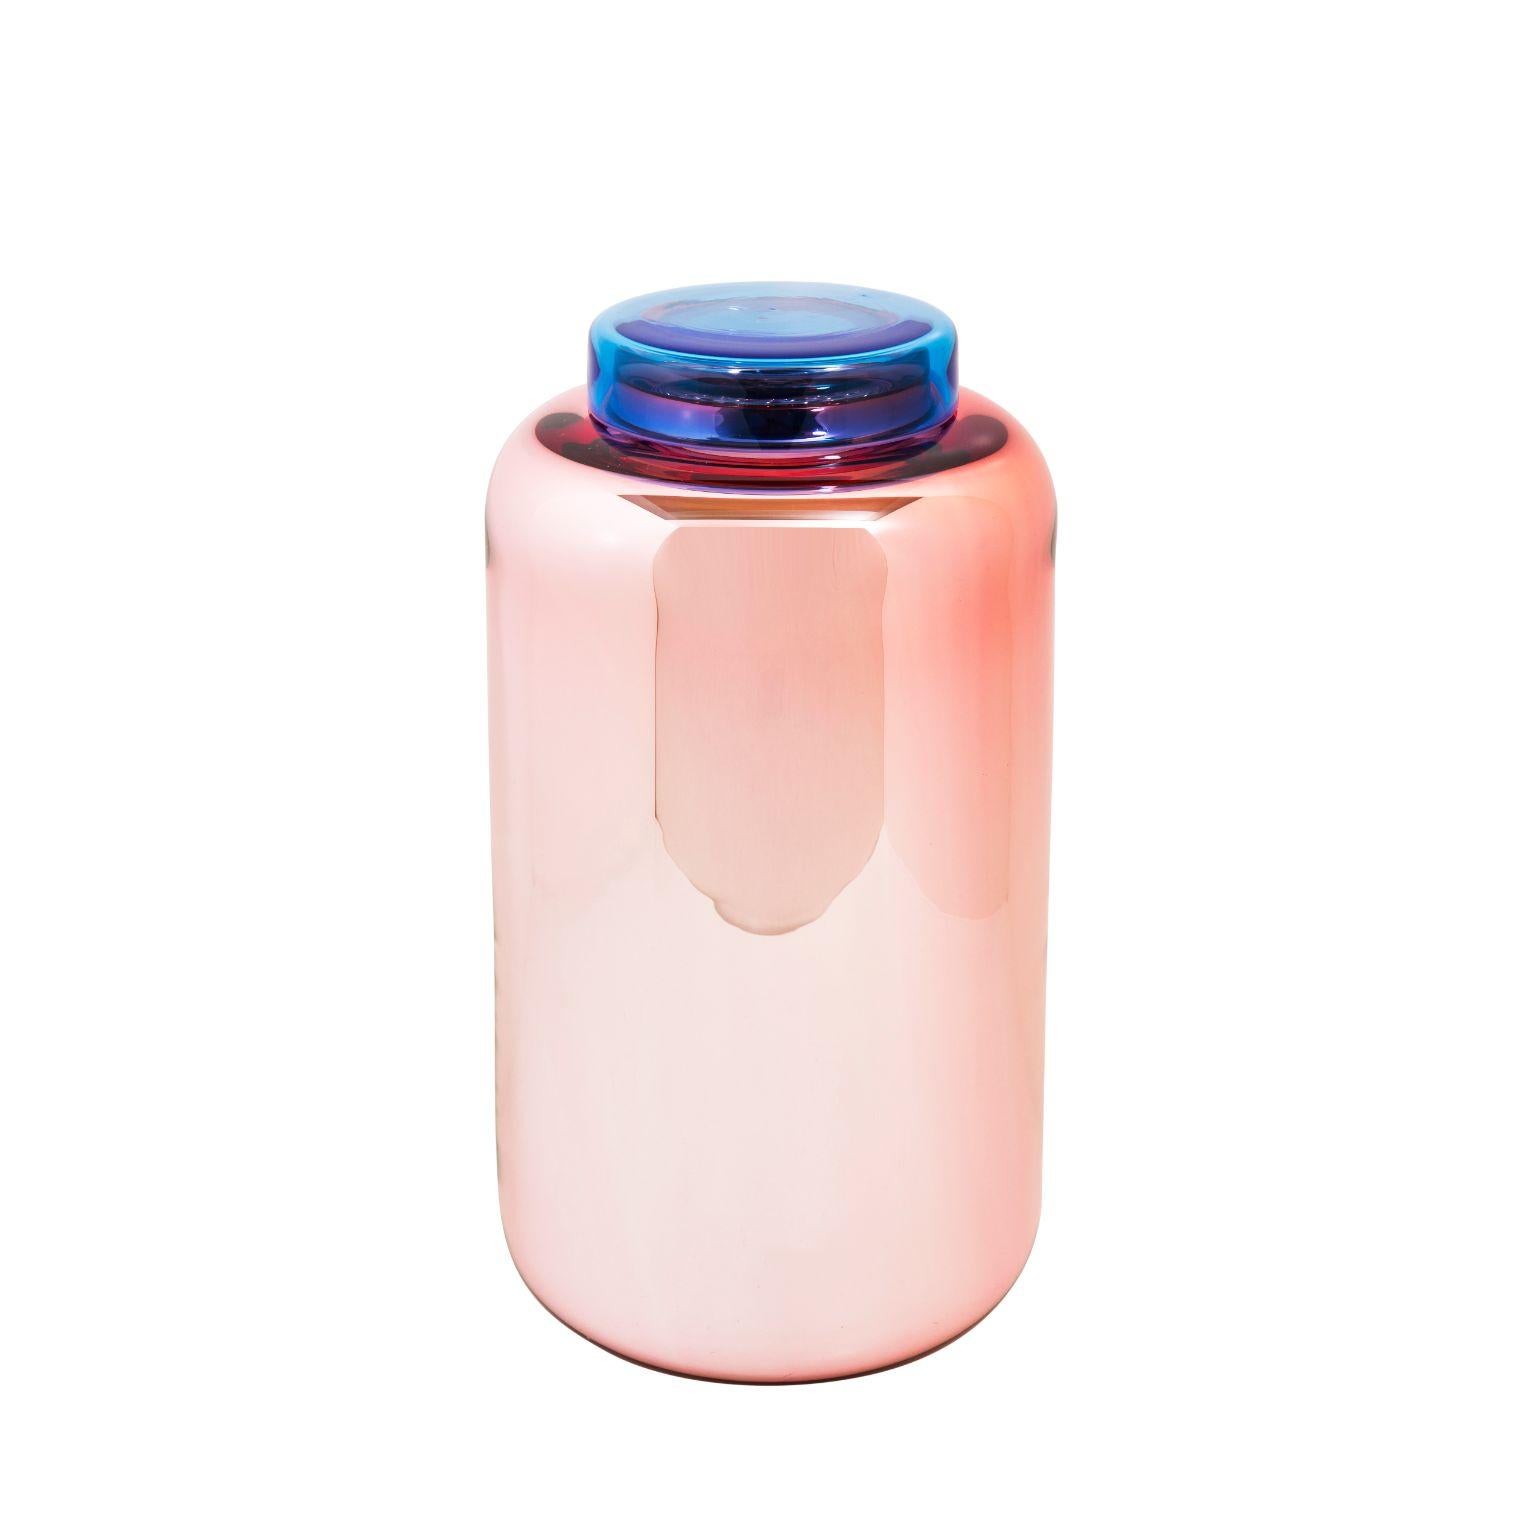 Vase et boîte à haute teneur en rose bleu par Pulpo
Dimensions : D16.5 x H30 cm
MATERIAL : verre fait à la main

Disponible également en différentes couleurs. 

Une collection décorative de formes courbes, pleine de vie, entre dans la composition de